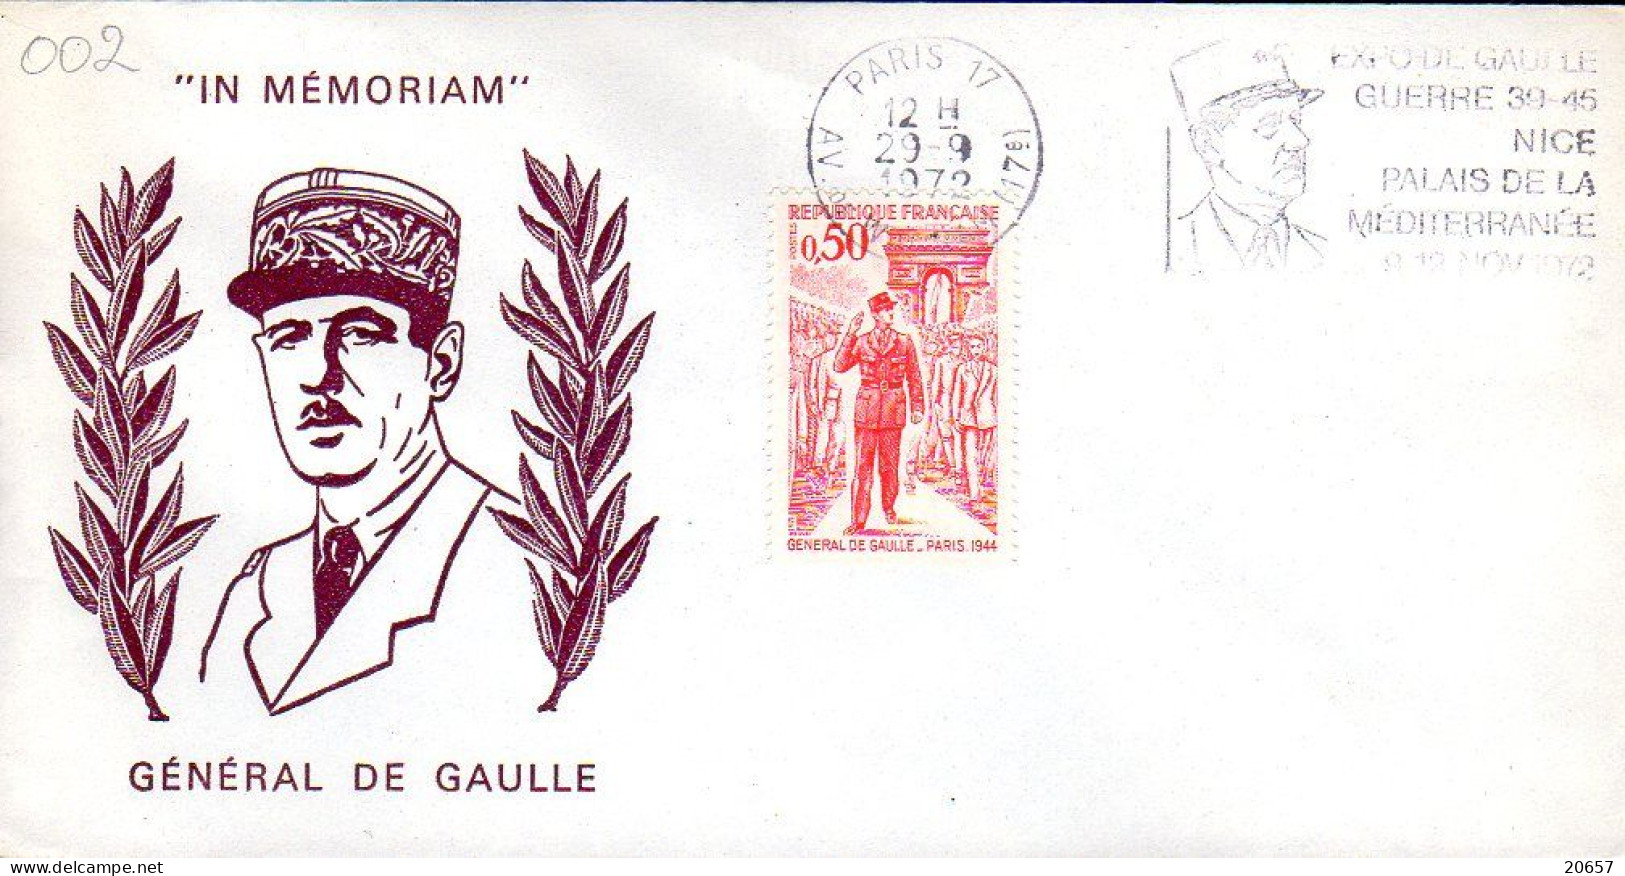 France Enveloppe Commémorative Expo Nice Du 09 Au 12 11 1972 Charles De Gaulle, Lot 03 - De Gaulle (General)